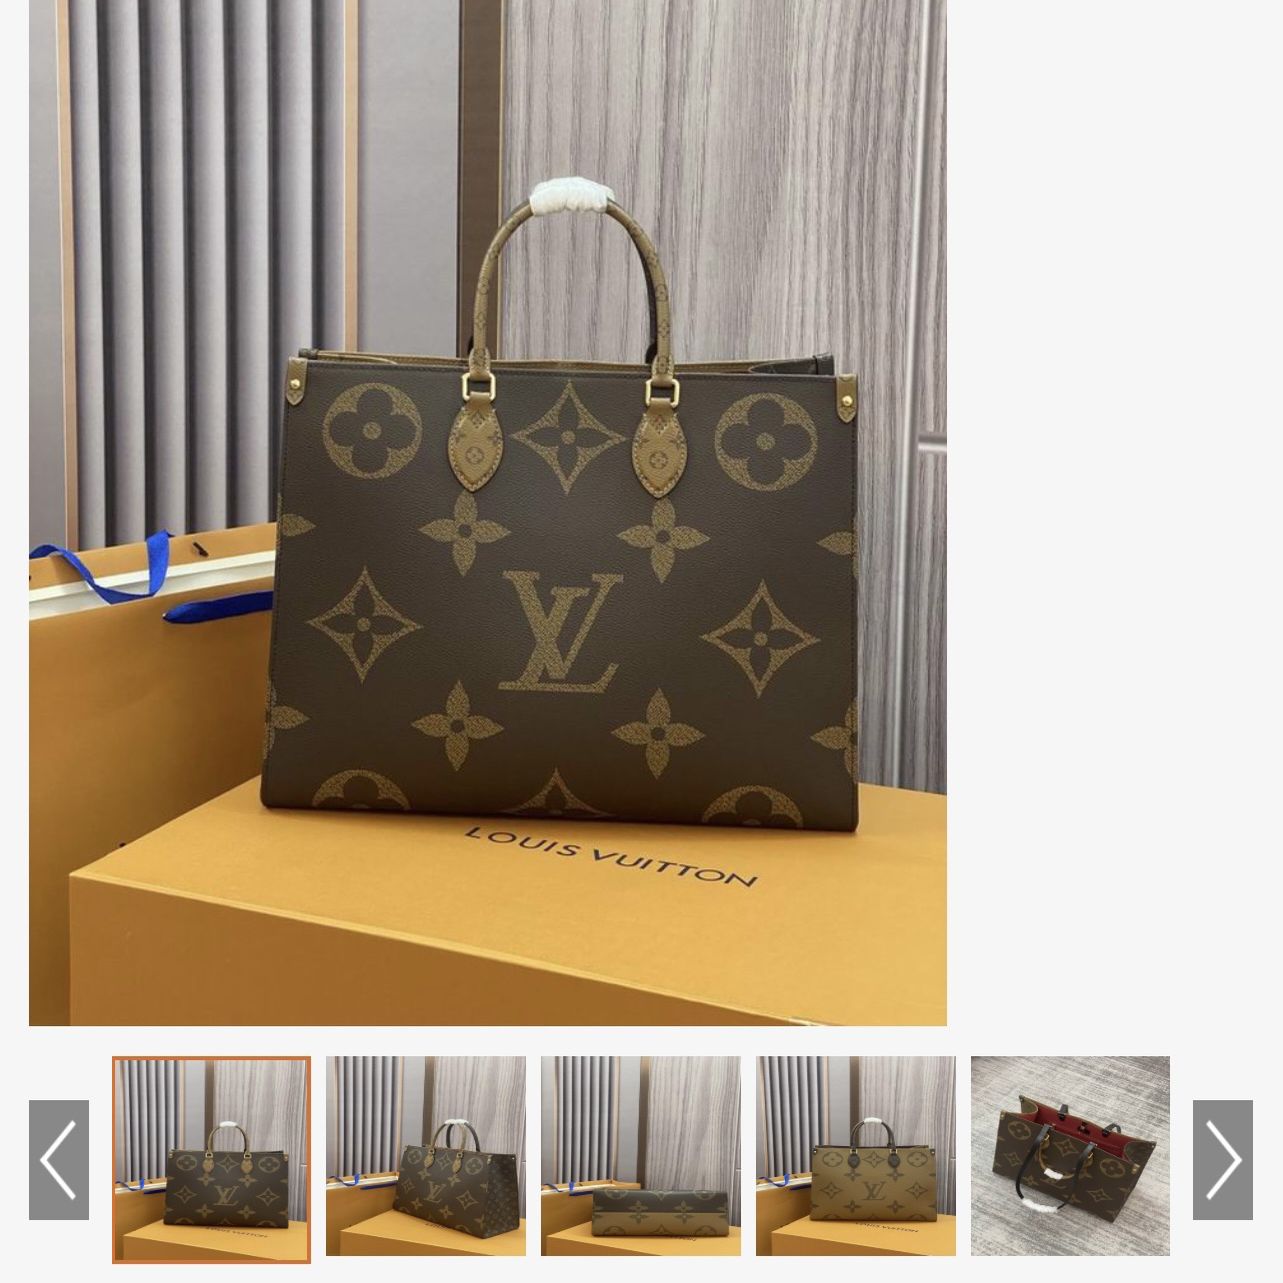 Authentic Louis Vuitton SD 4067 Monogram Canvas Haut Shoulder Bag for Sale  in Huntington Beach, CA - OfferUp